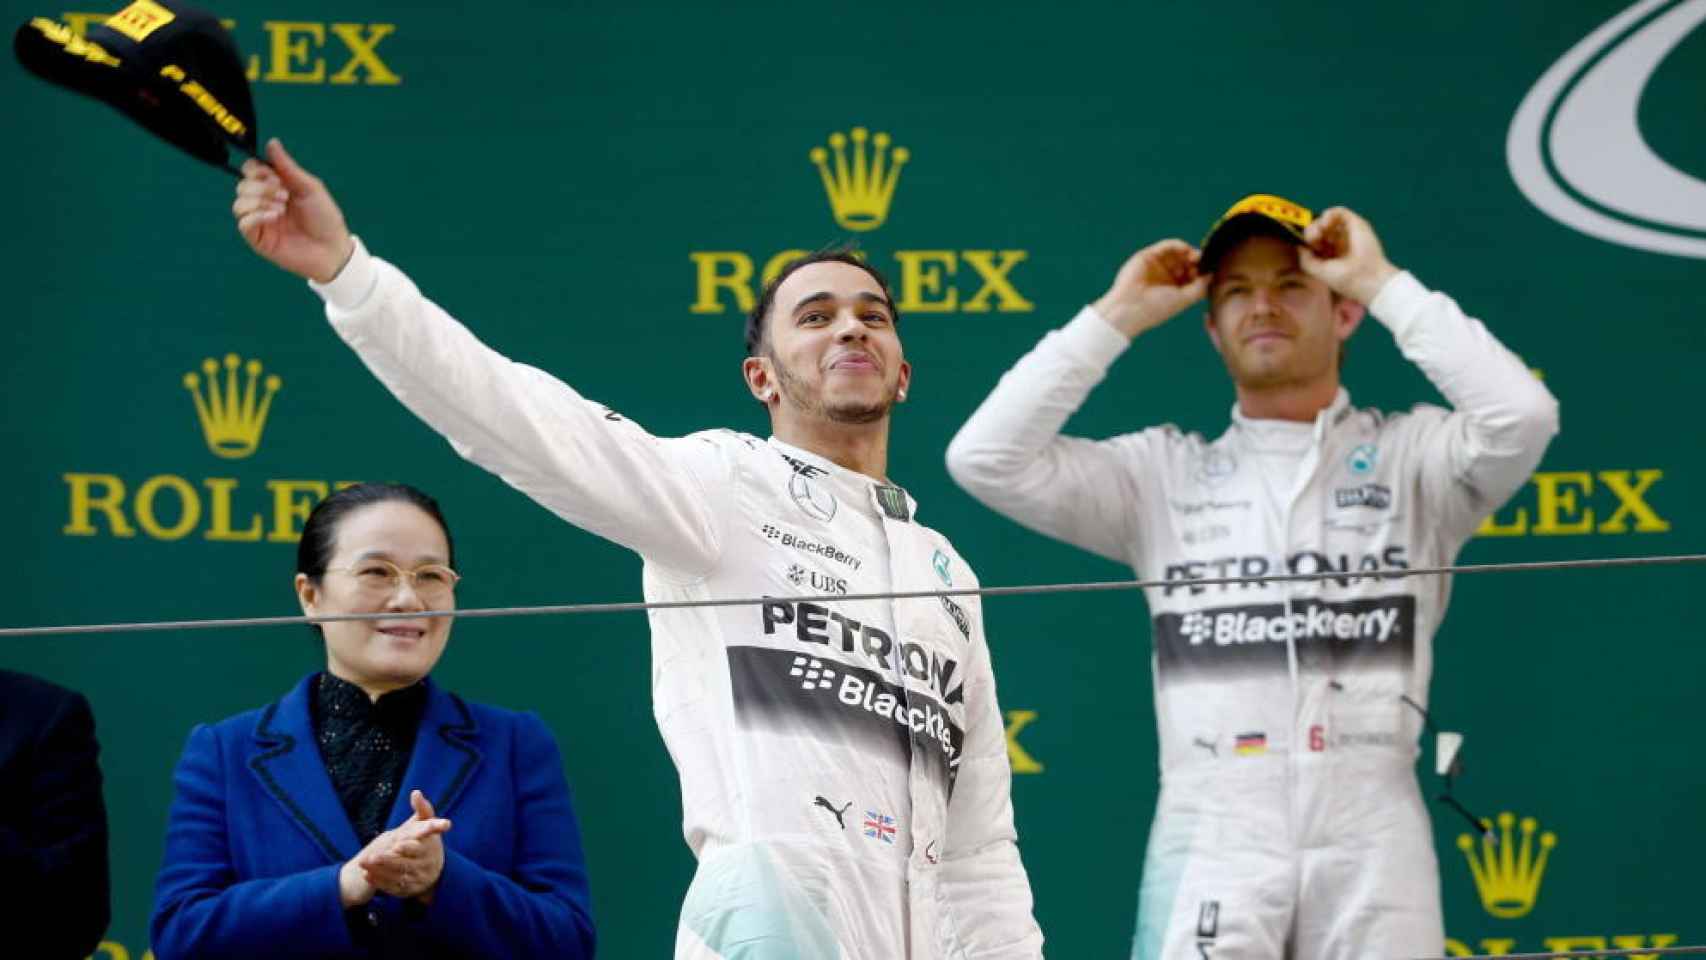 Hamilton y Rosberg